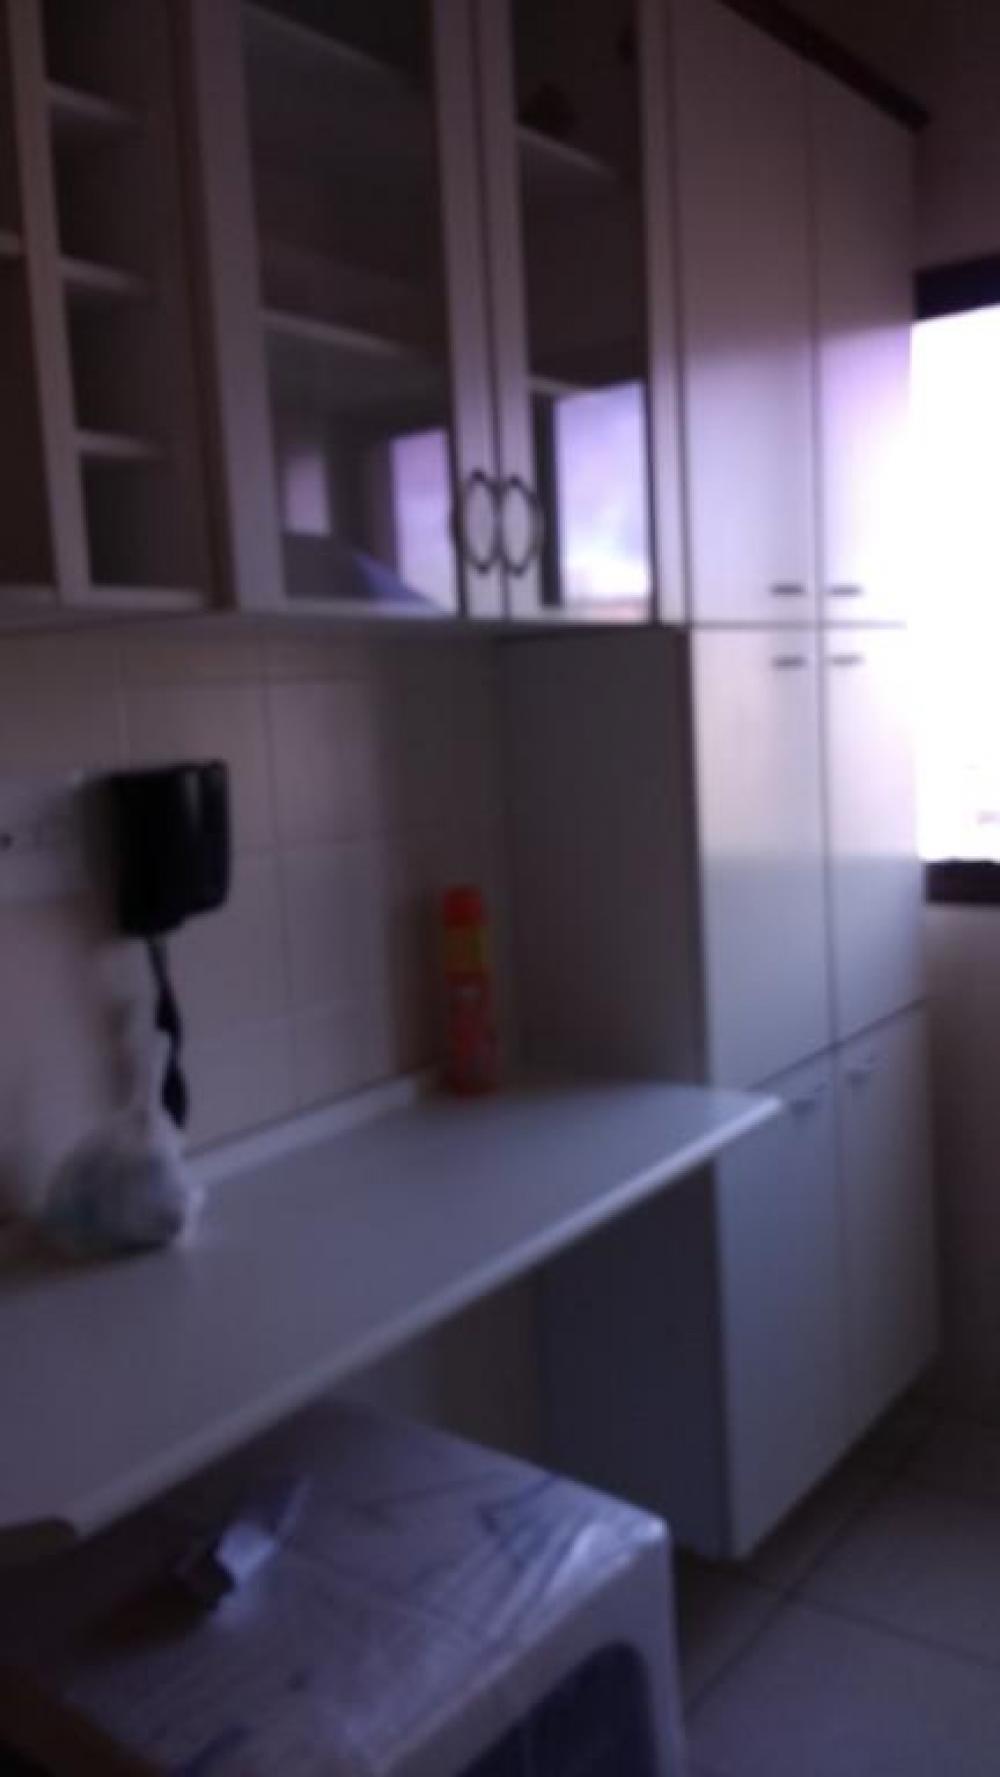 Comprar Apartamento / Padrão em São José do Rio Preto R$ 375.000,00 - Foto 27